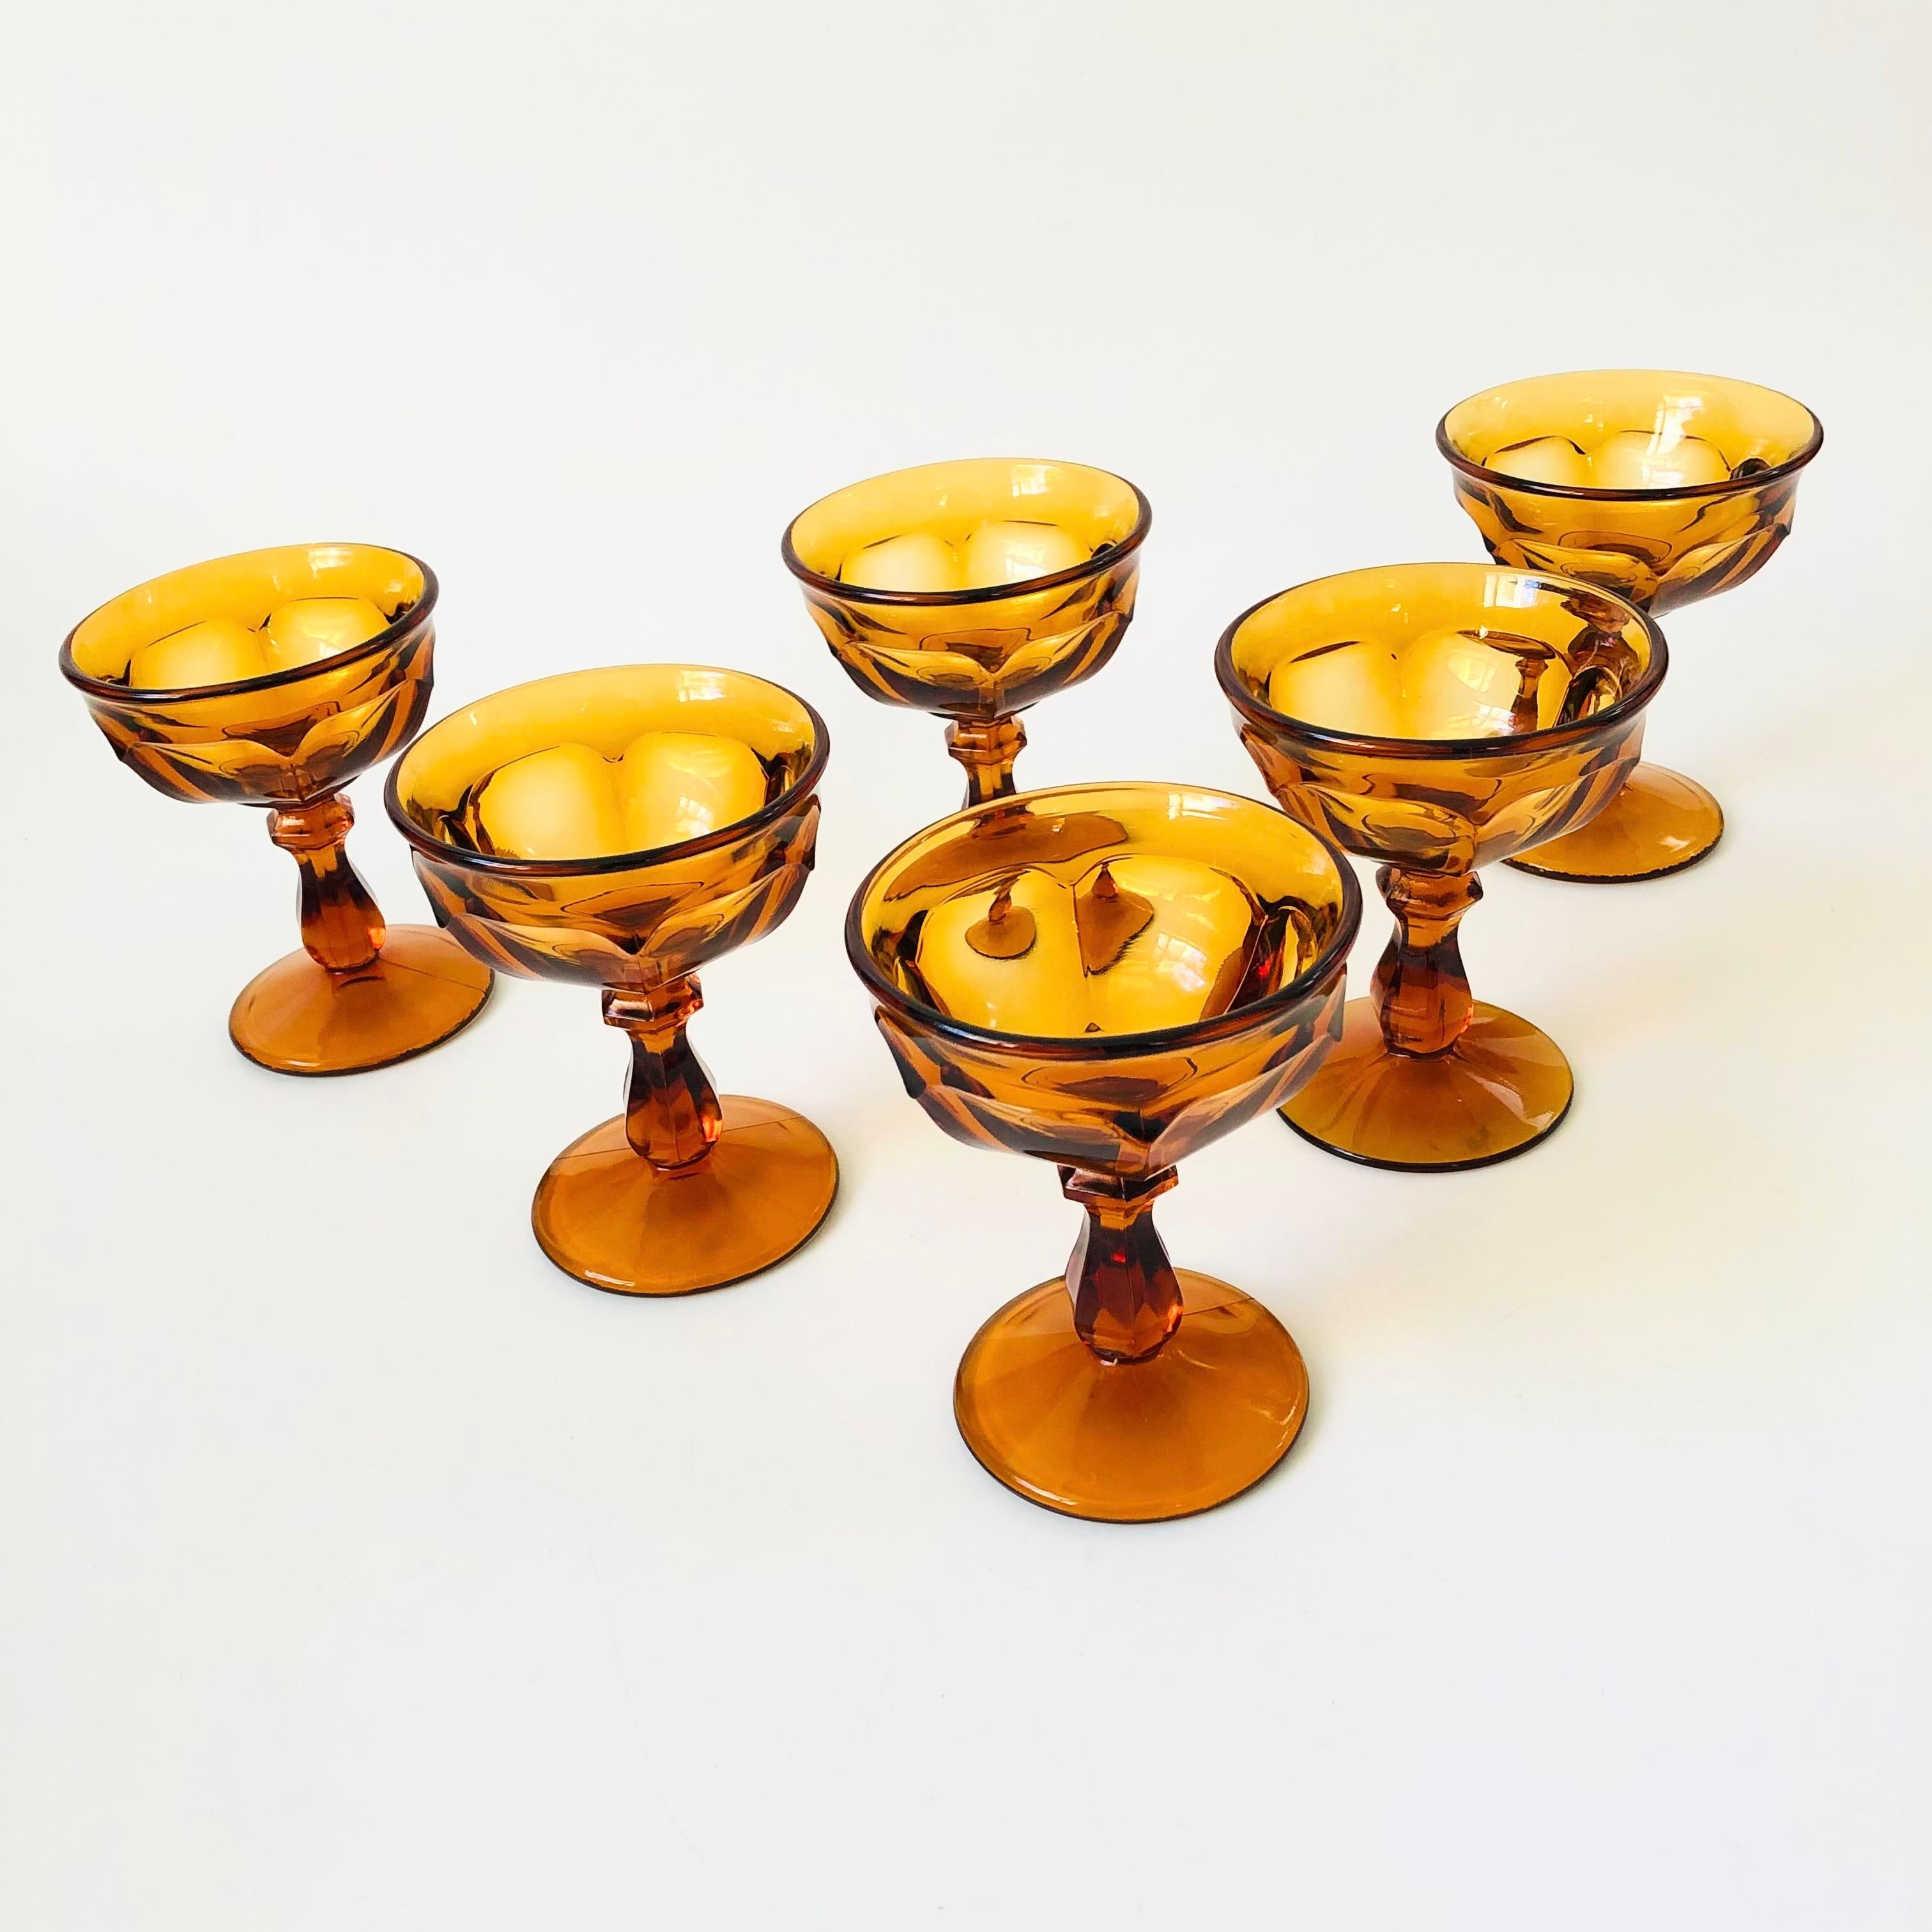 Un ensemble de 6 magnifiques verres coupés ambrés. Fabriqué en verre épais avec  belle conception ornementale. Parfait pour le champagne ou les cocktails.

